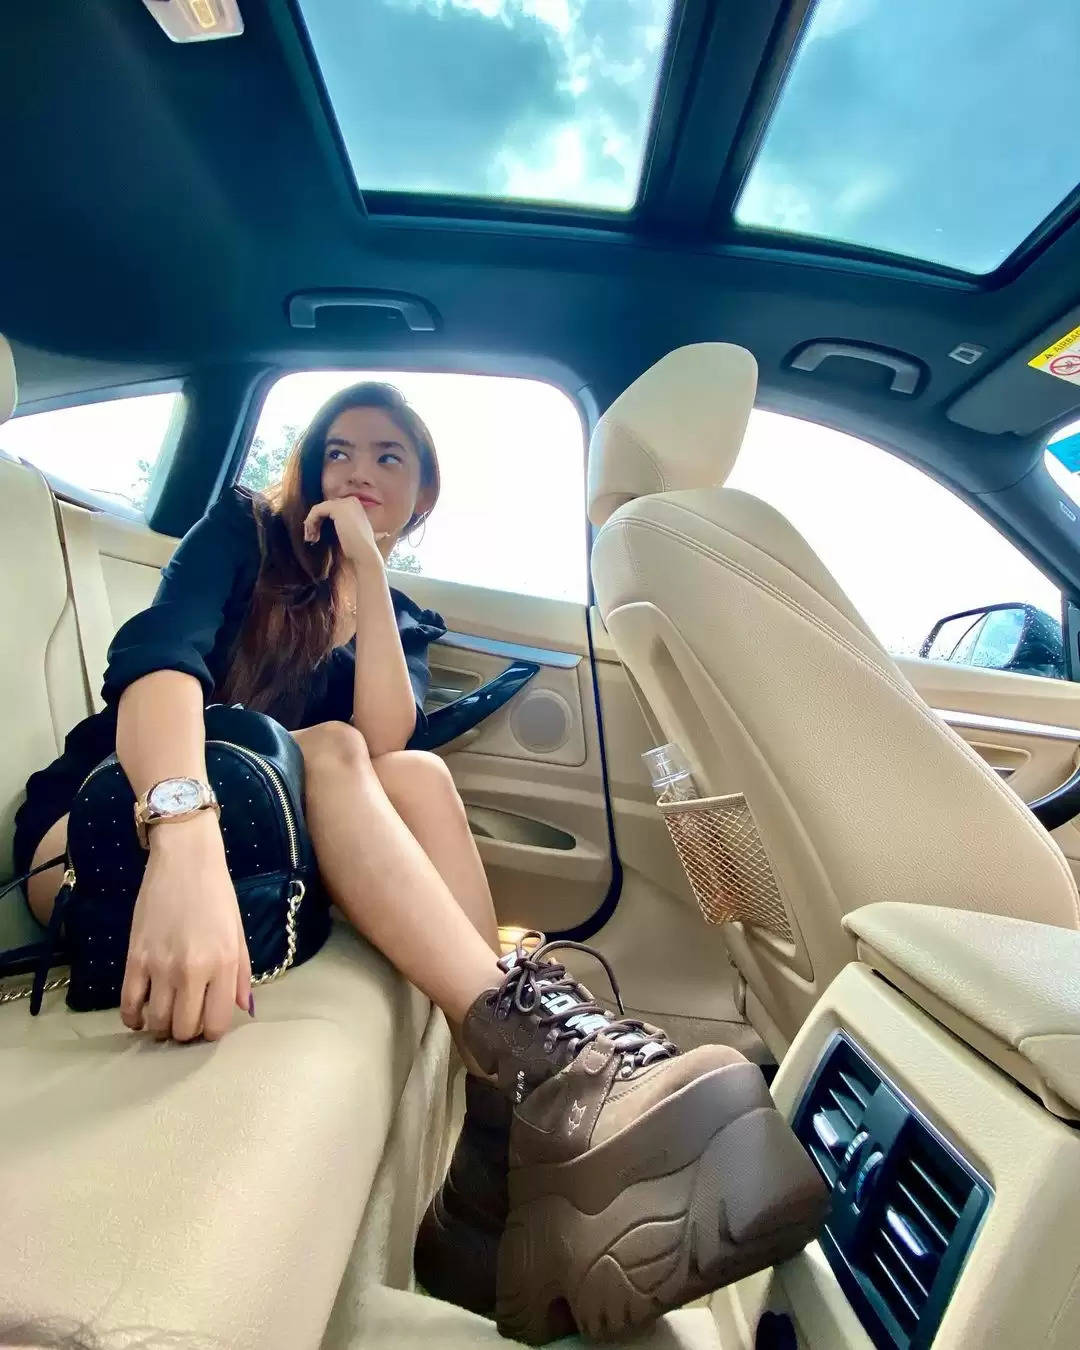 लेडी बॉस लुक में नजर आई यह 18 वर्षीय अभिनेत्री, कार में खिंचवाई तस्वीरें